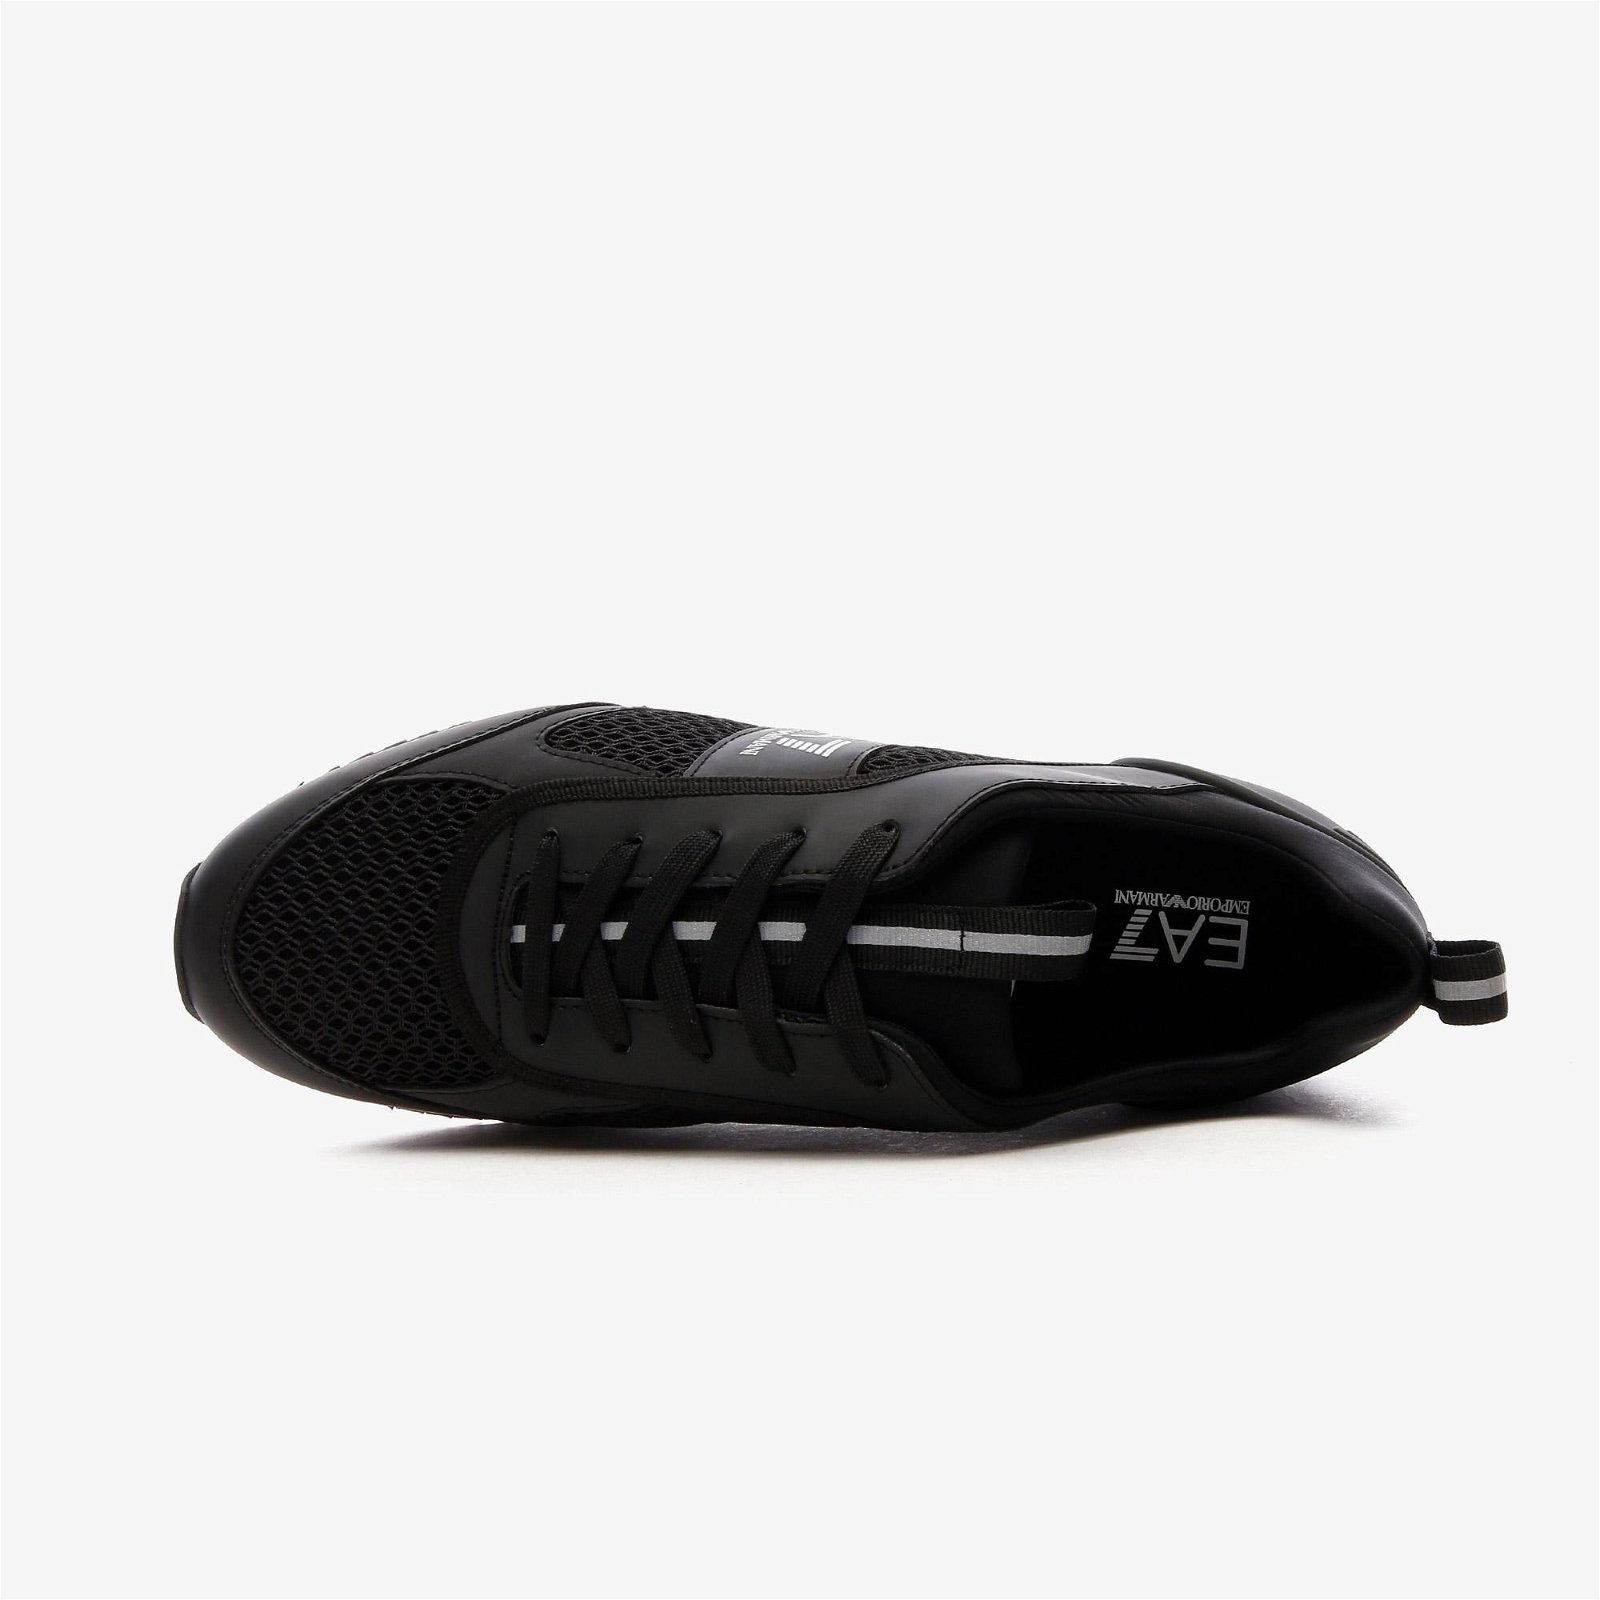 EA7 Emporio Armani Logo Baskılı Erkek Siyah/Beyaz Spor Ayakkabı